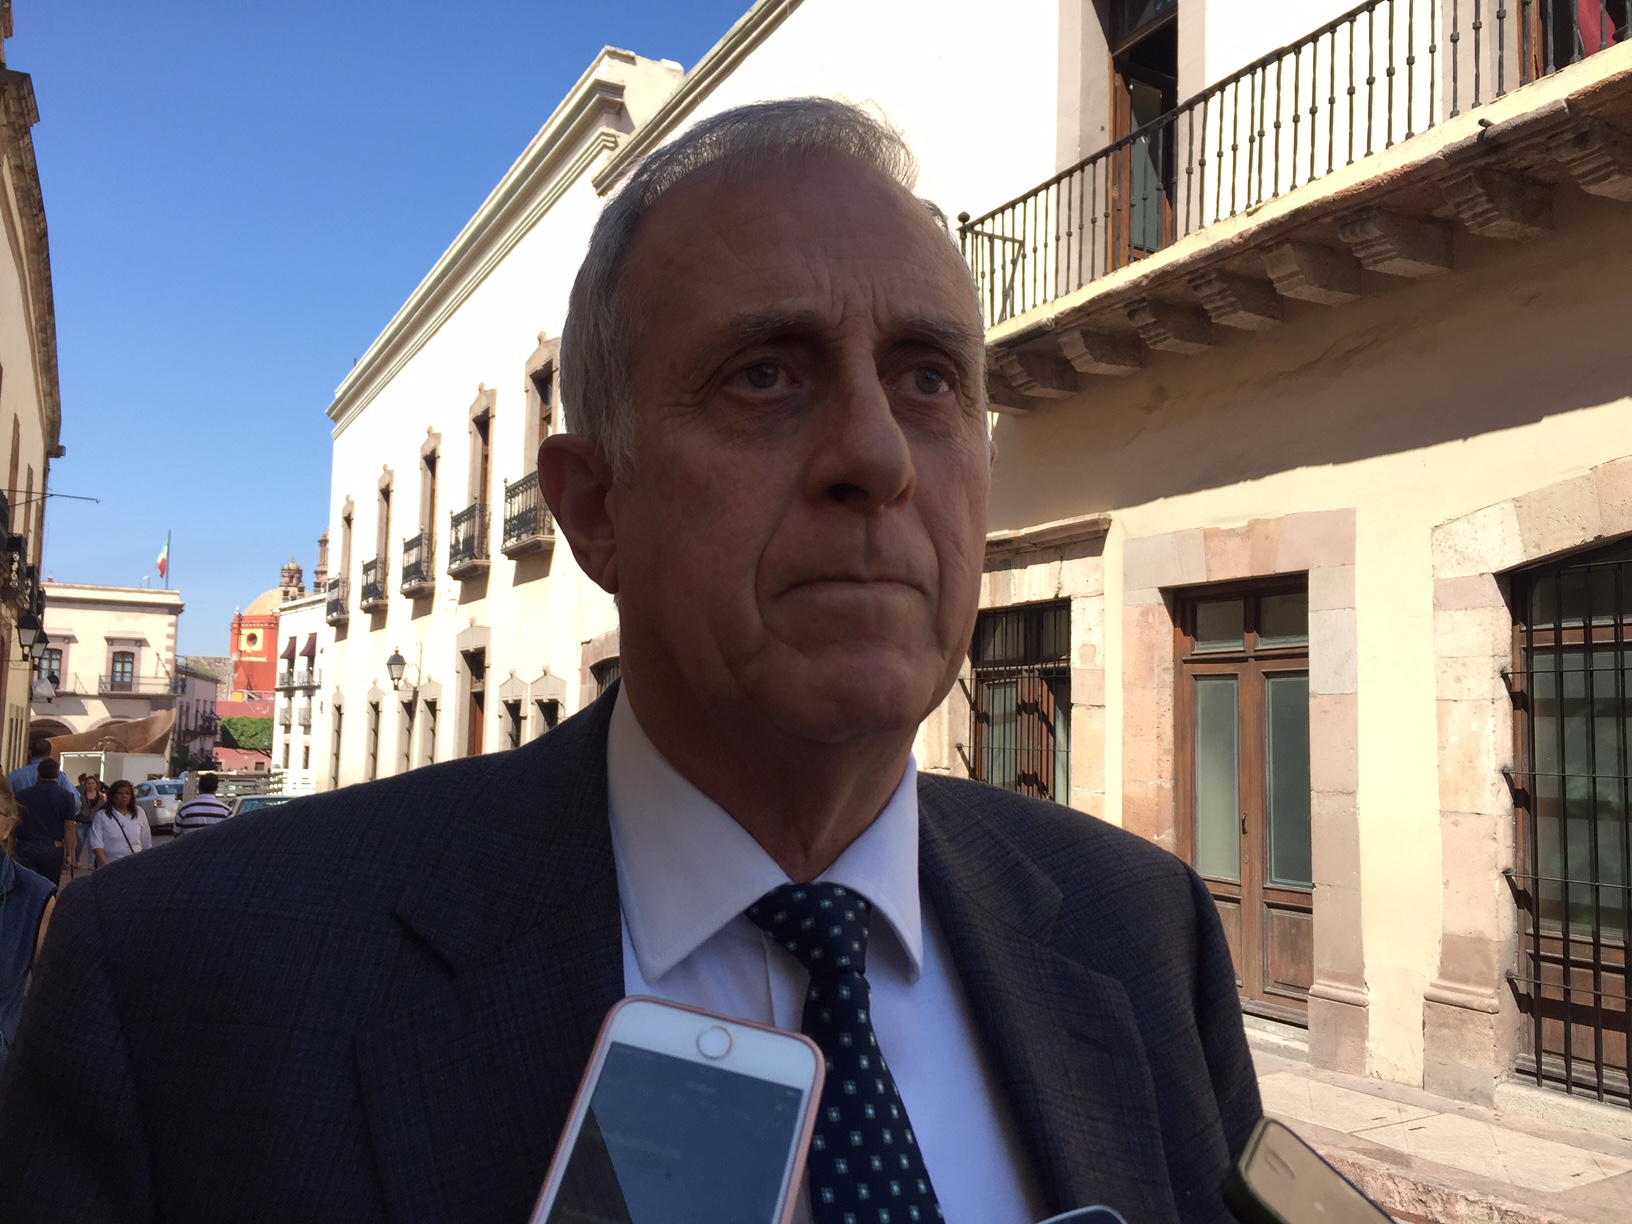  “Querétaro se seguirá apretando el cinturón”: Alcocer Gamba sobre reducción de presupuesto